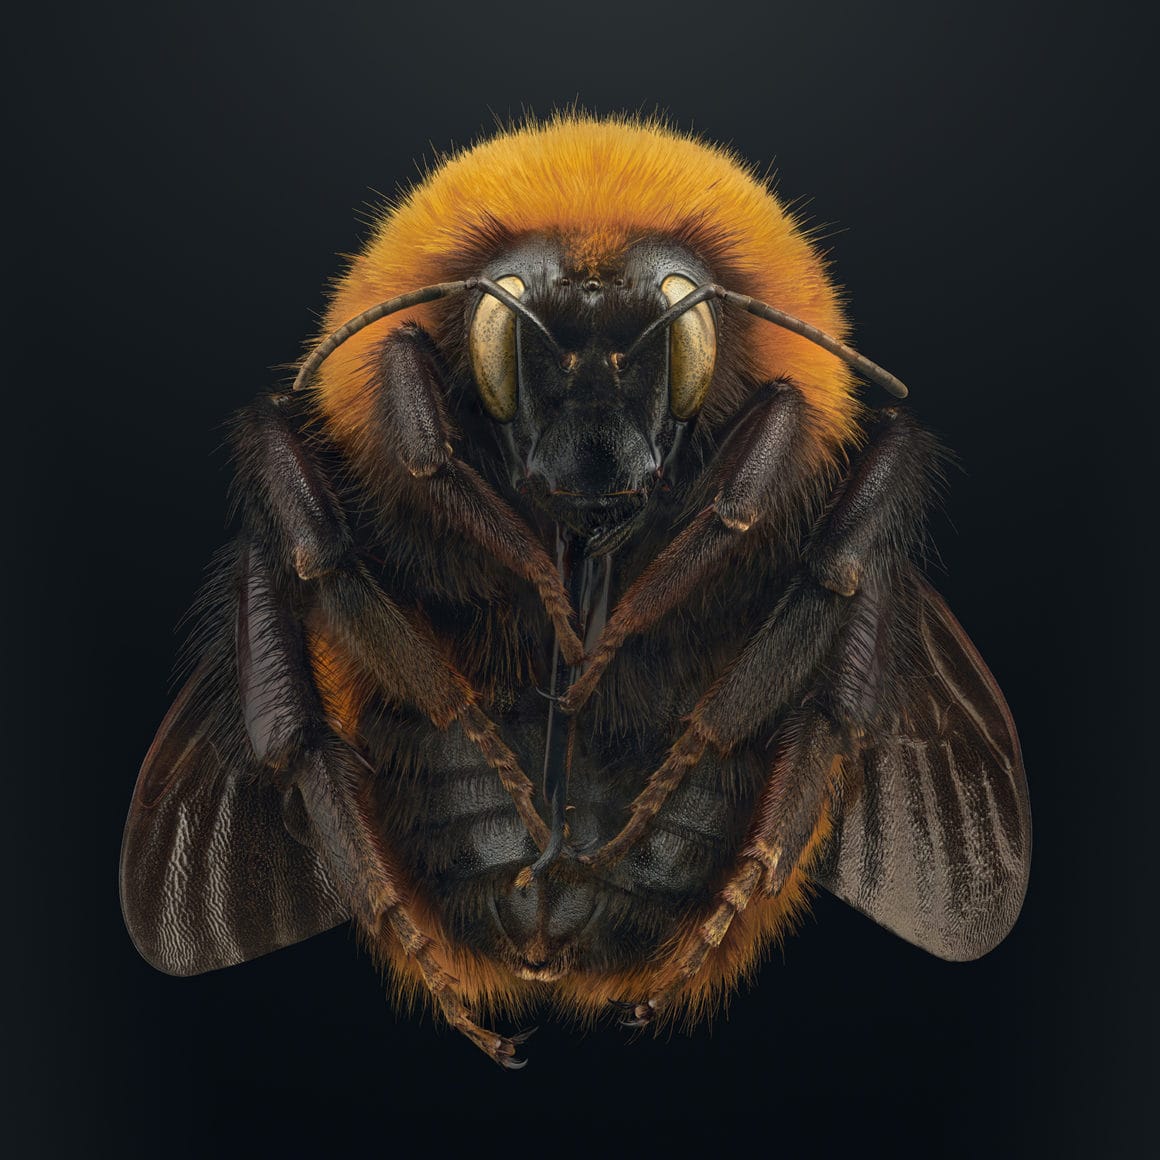 Une abeille vue de près prise grâce à la macro photo.